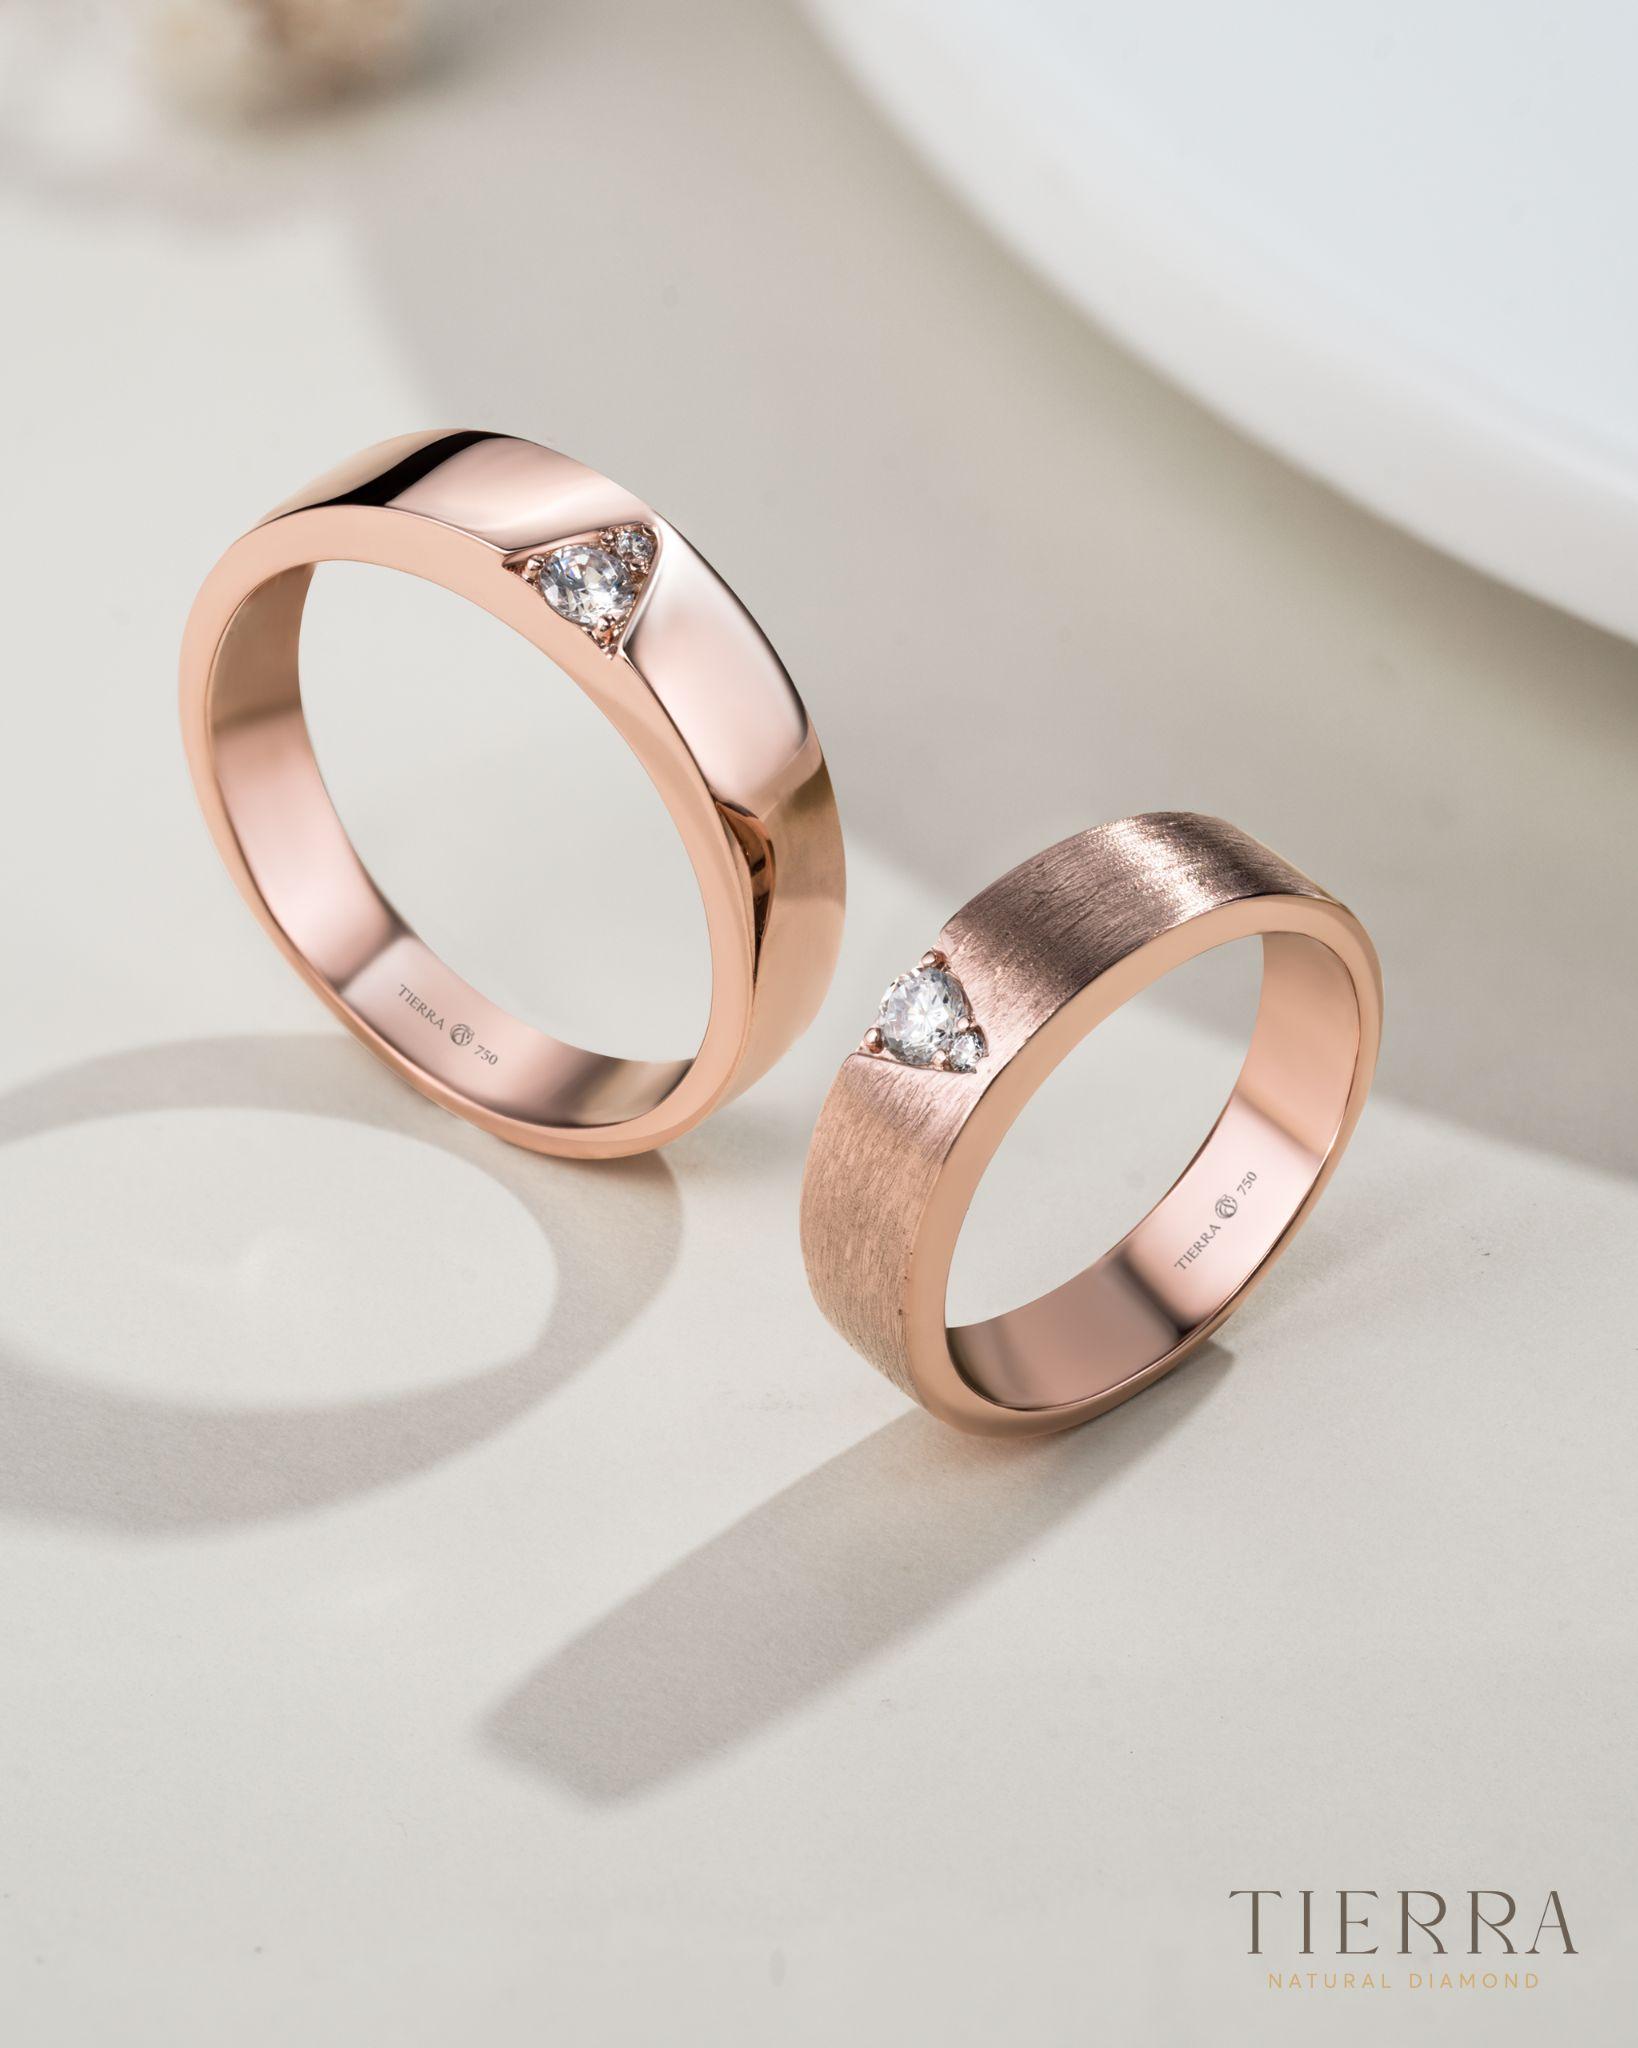 Những mẫu nhẫn cưới hot nhất năm 2018 - Ảnh cưới đẹp, ảnh gia đình, ảnh  nghệ thuật, ảnh sản phẩm Hà Nội